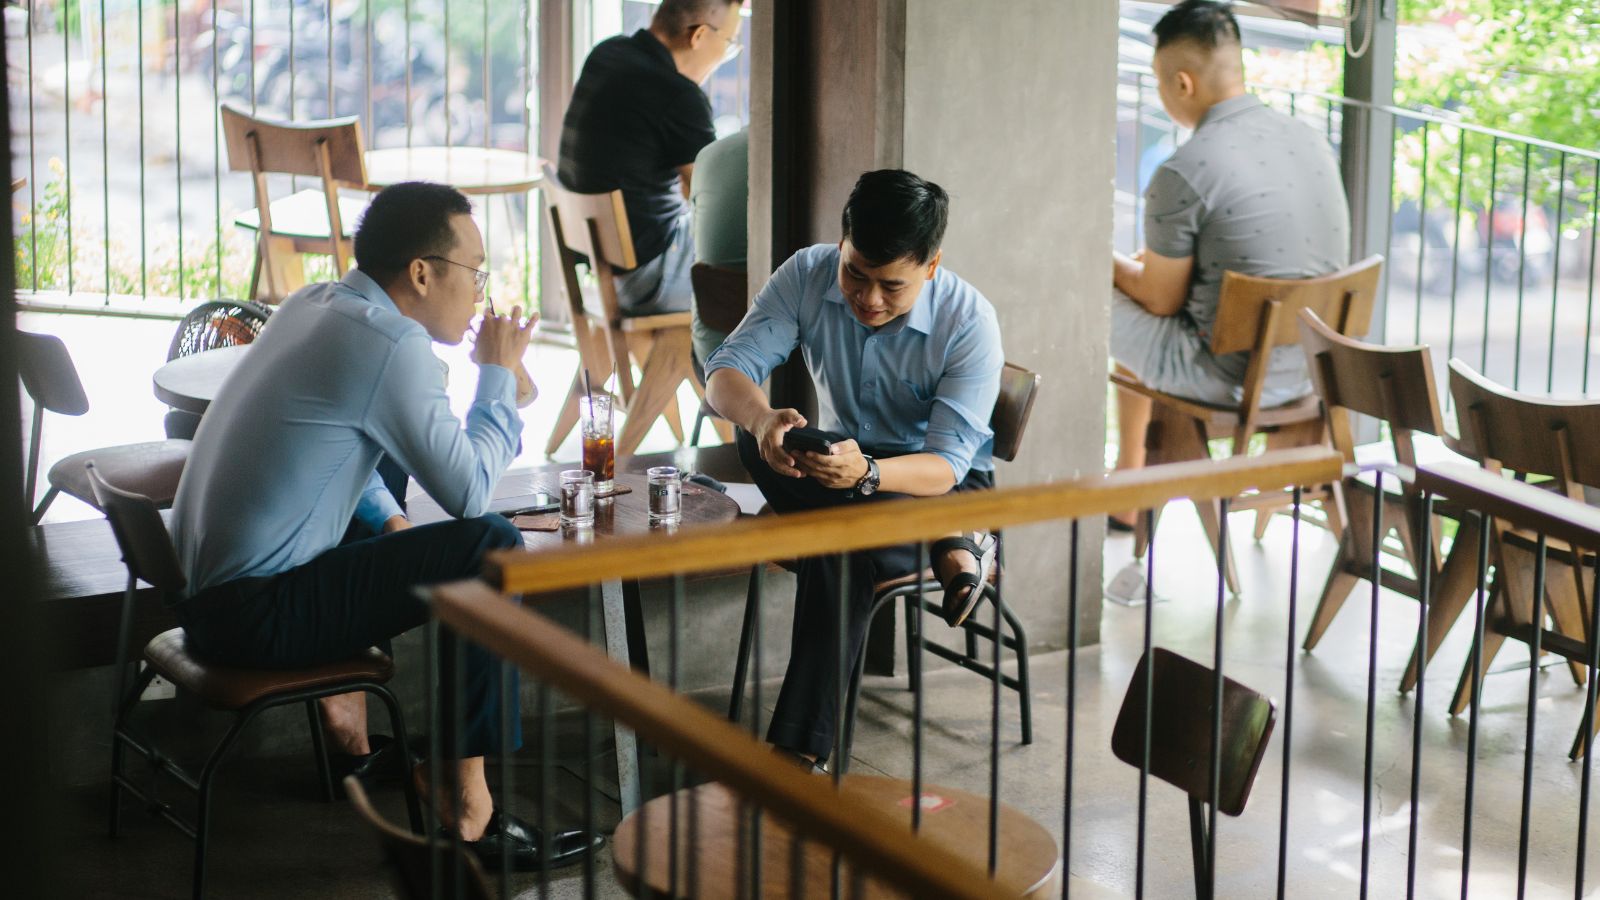 văn hoá cafe và trà việt nam, hình ảnh nhóm bạn trẻ đang ngồi uống cafe tại The Local Beans Đà Nẵng